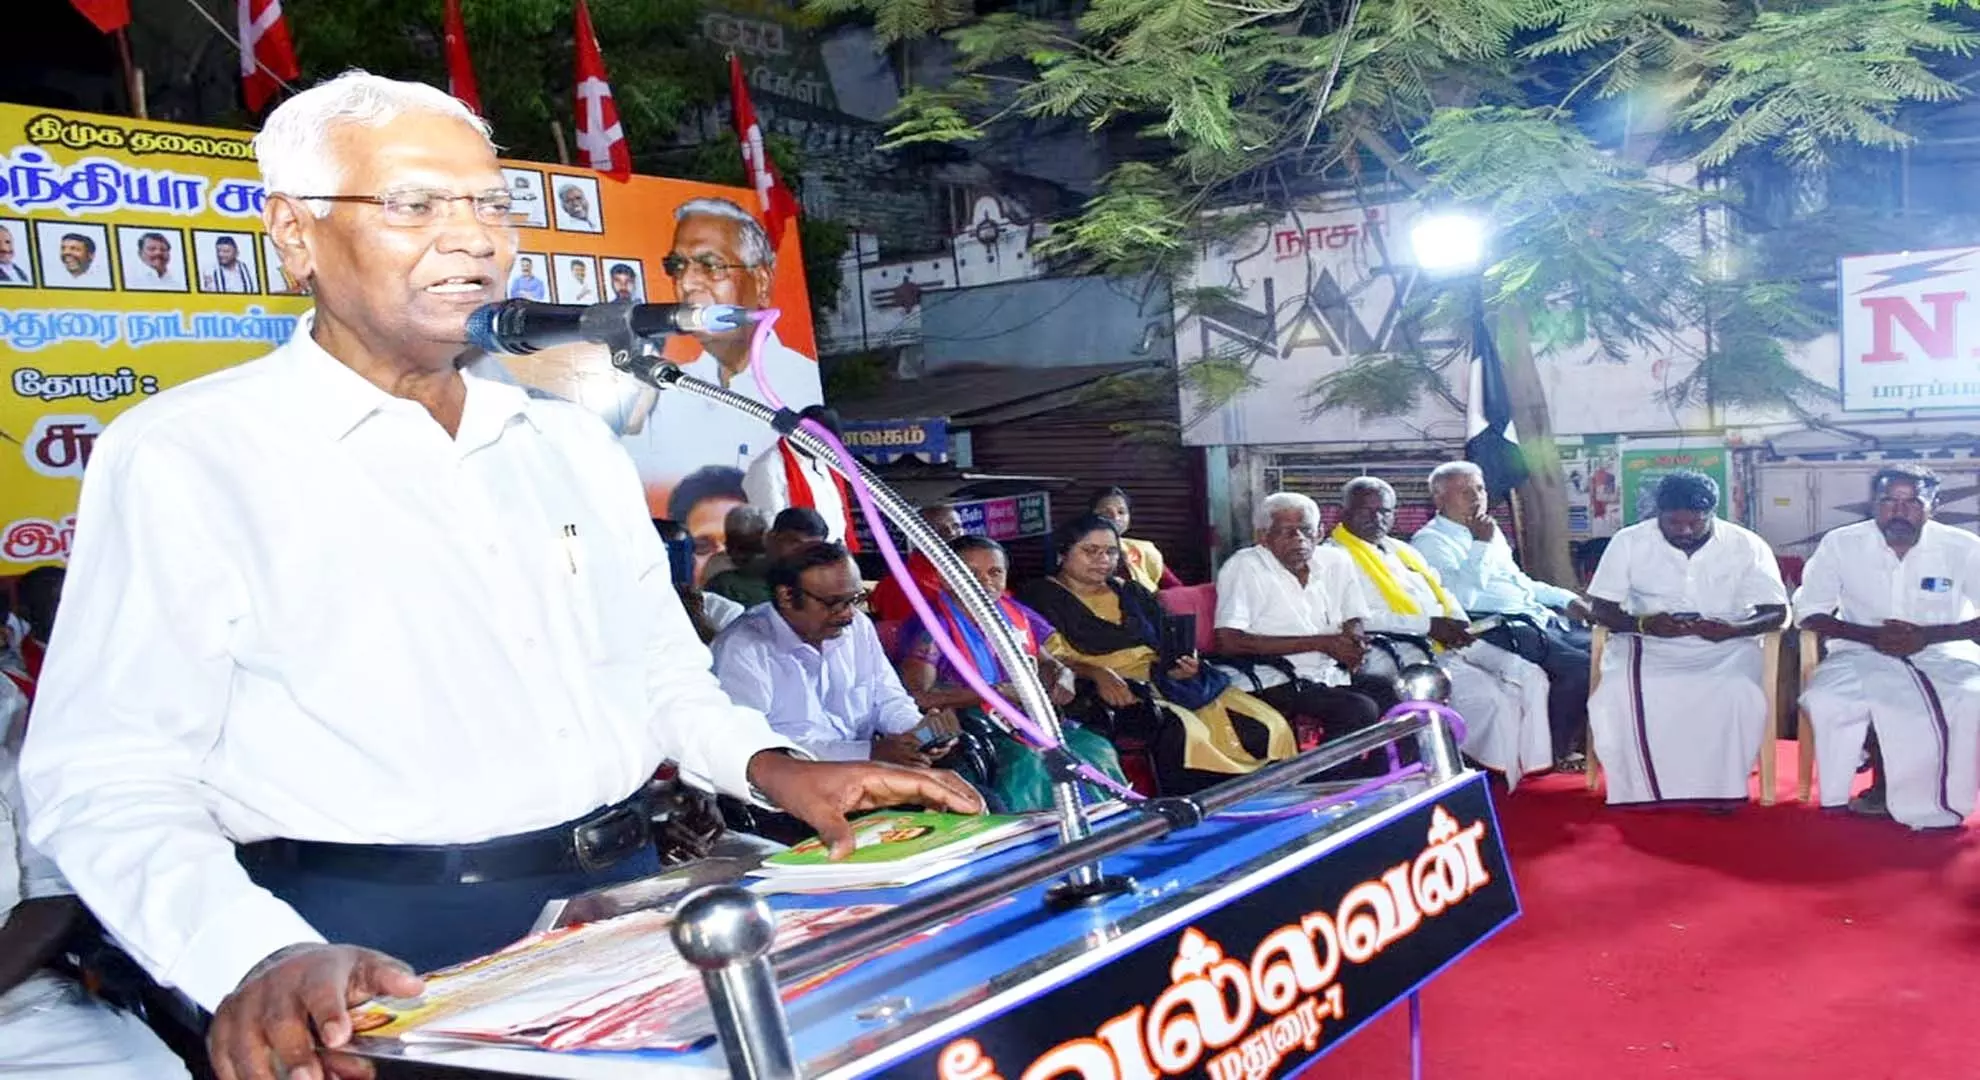 तमिलनाडु में मोदी, शाह के रोड शो का कारण भारत की हार का डर था: डी राजा